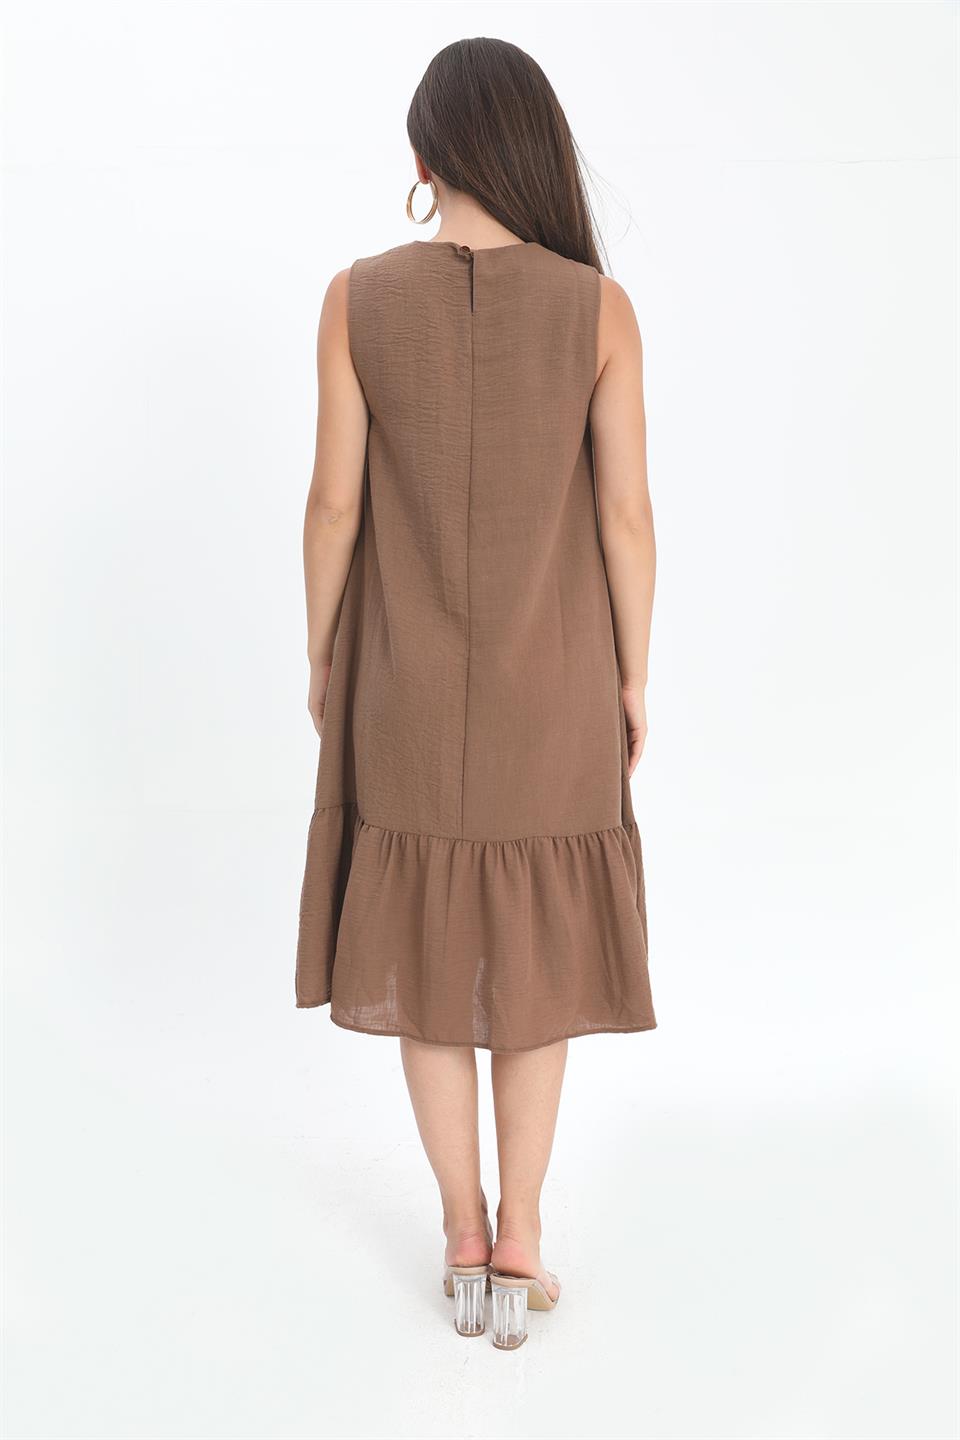 Crystal Linen Sleeveless Women's Loose Dress - Brown - STREET MODE ™